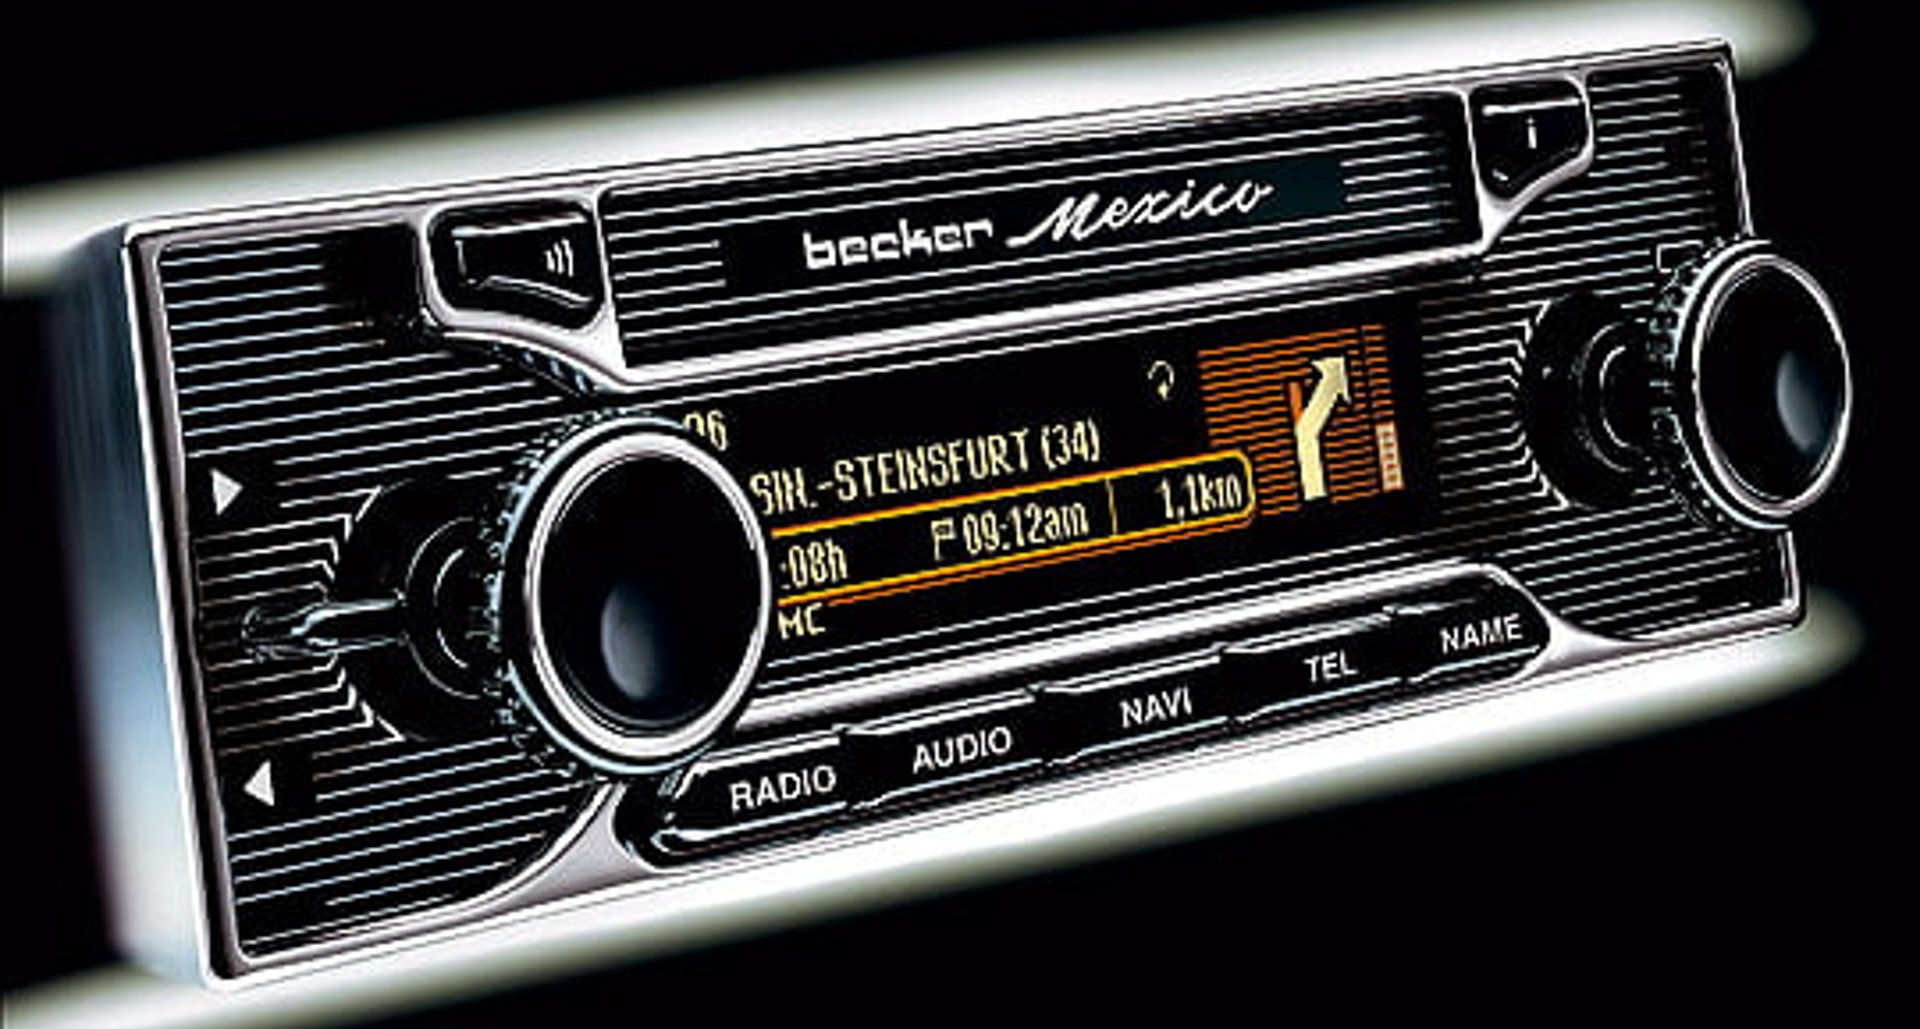 Auto radio retro becker — Alcoche